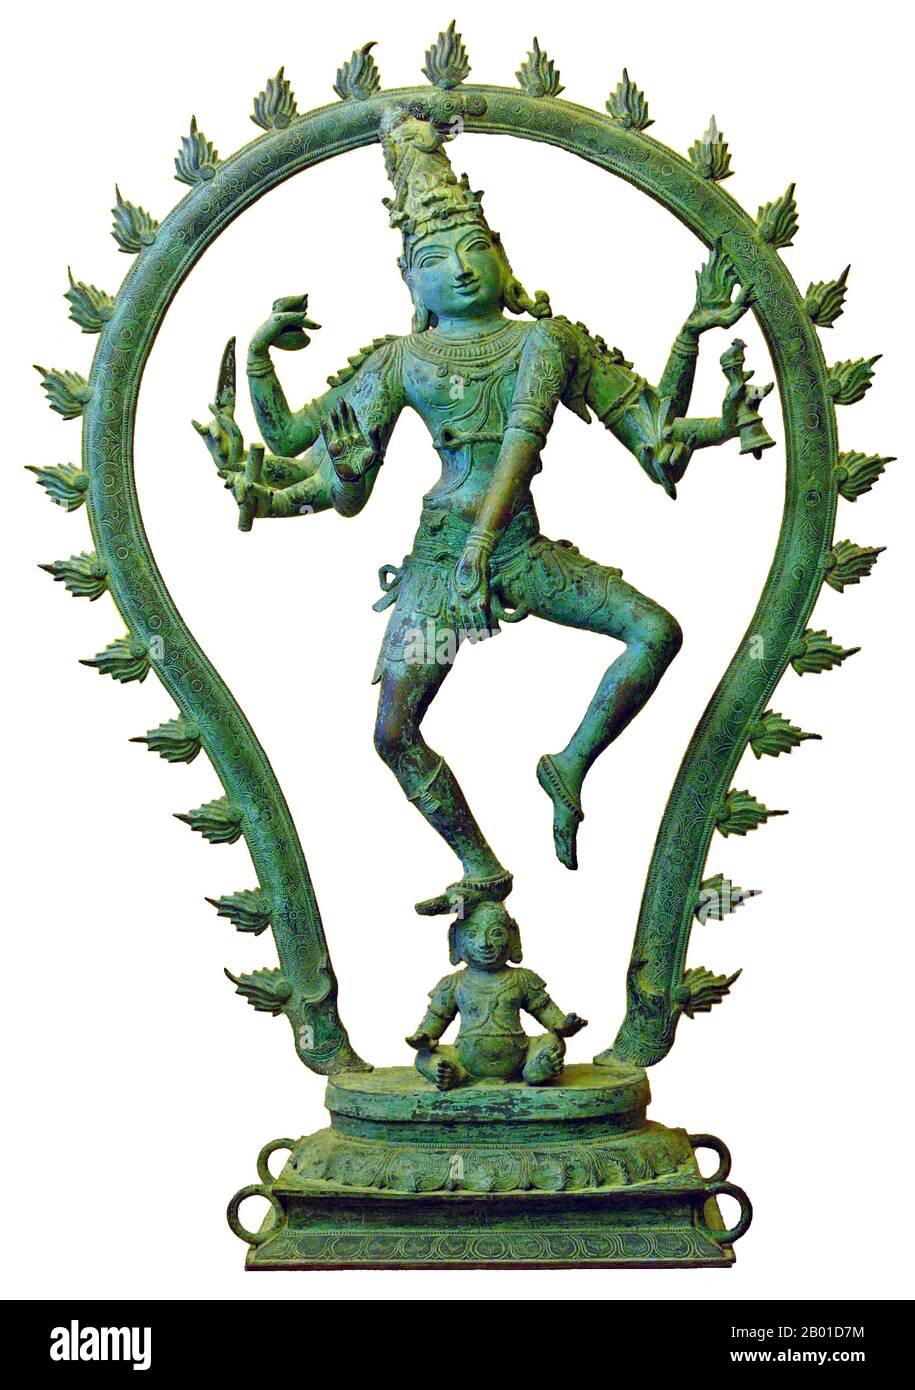 Inde: Shiva Nataraja ou 'Dancing Shiva' de Pondichéry, c. 15th Century ce. Bronze recouvert de patina verte de l'altération dans l'air salé, placé pendant quelques centaines d'années dans un temple près de la mer. Photo de Hannes peignoir (Licence CC BY-sa 3,0). Nataraja ou Nataraj ('le Seigneur (ou Roi) de la danse'; Tamil: Kathan) est une représentation tamoule du dieu hindou Shiva comme danseur cosmique Koothan qui exécute sa danse divine pour détruire un univers fatigué et préparer le dieu Brahma à commencer le processus de création. Banque D'Images